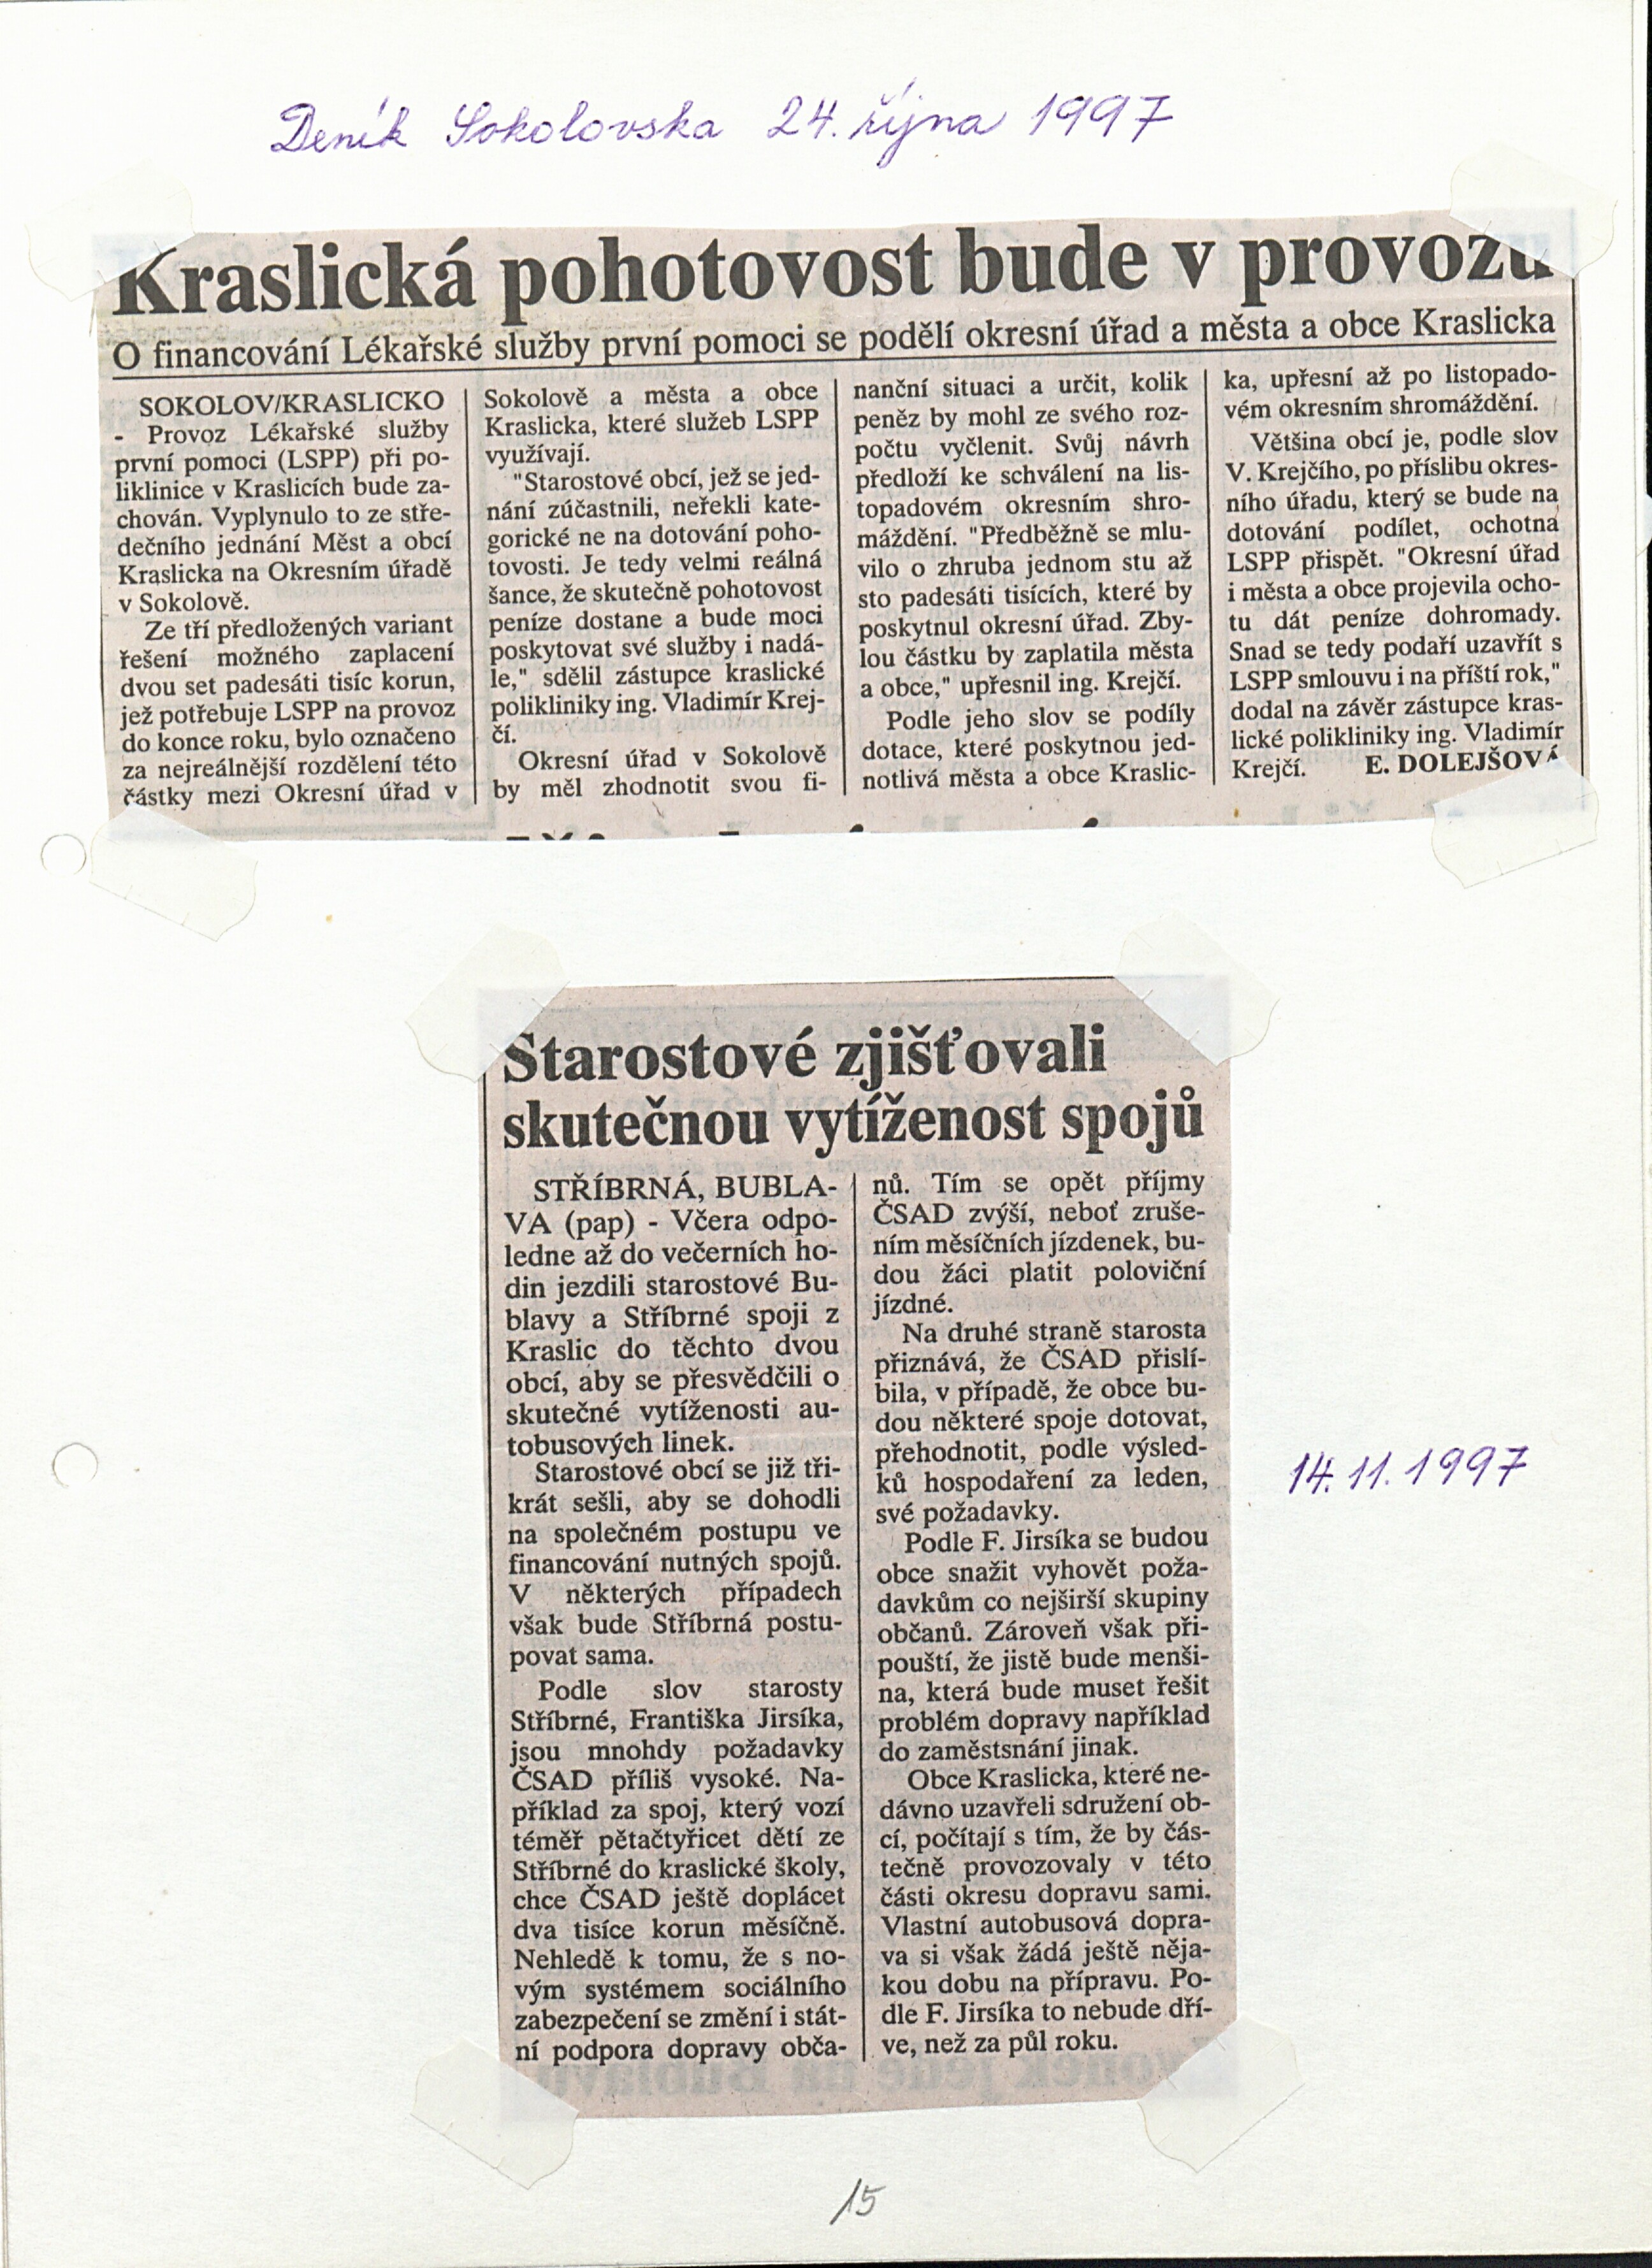 16. soap-so_01331_obec-stribrna-priloha-1997-1999_0160